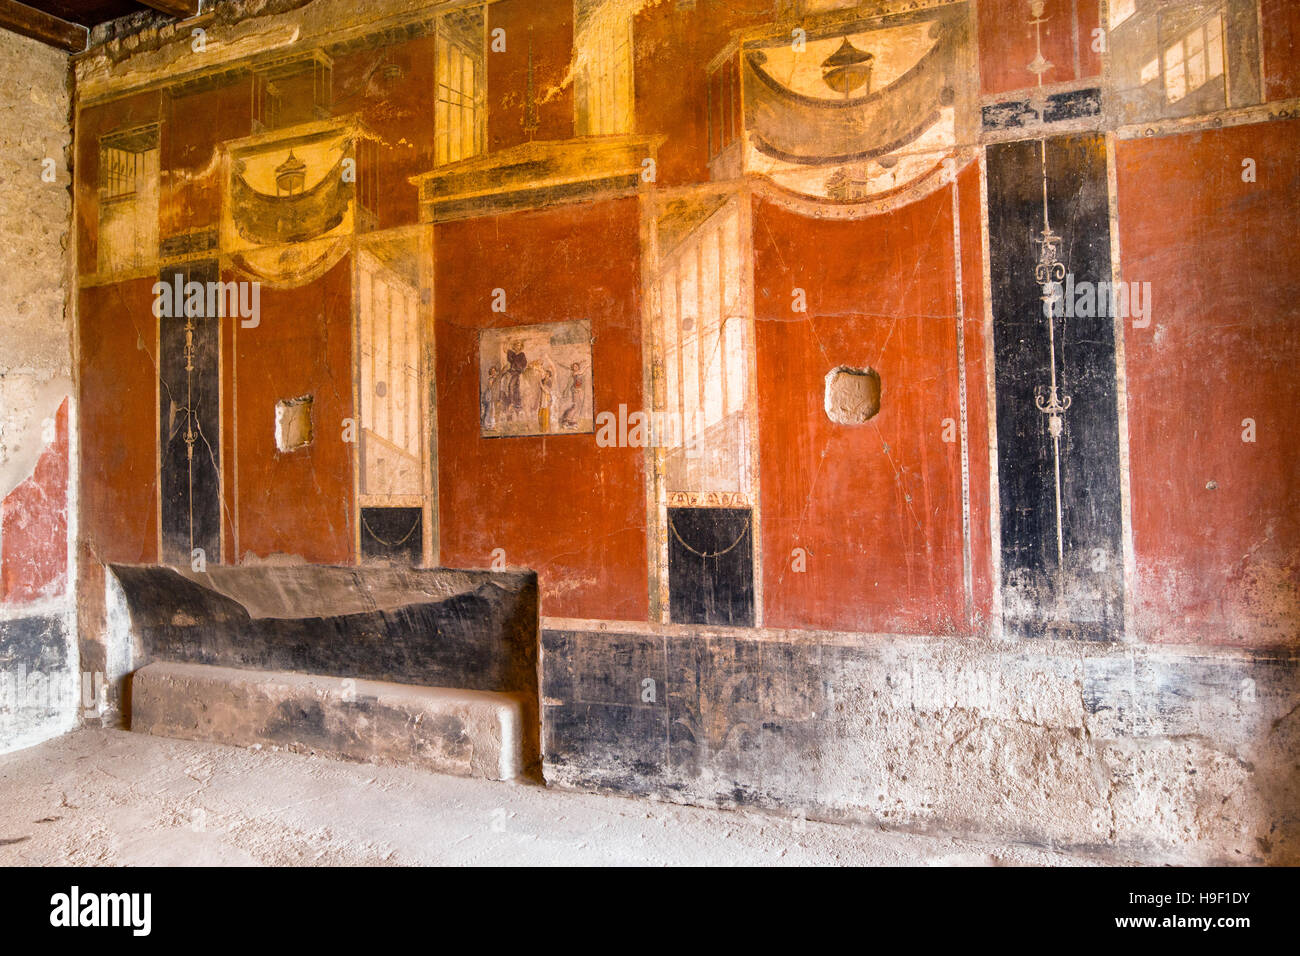 Antiguo muro frescos pintados en la antigua ciudad romana de Pompeya. La región de Campania, Italia Foto de stock